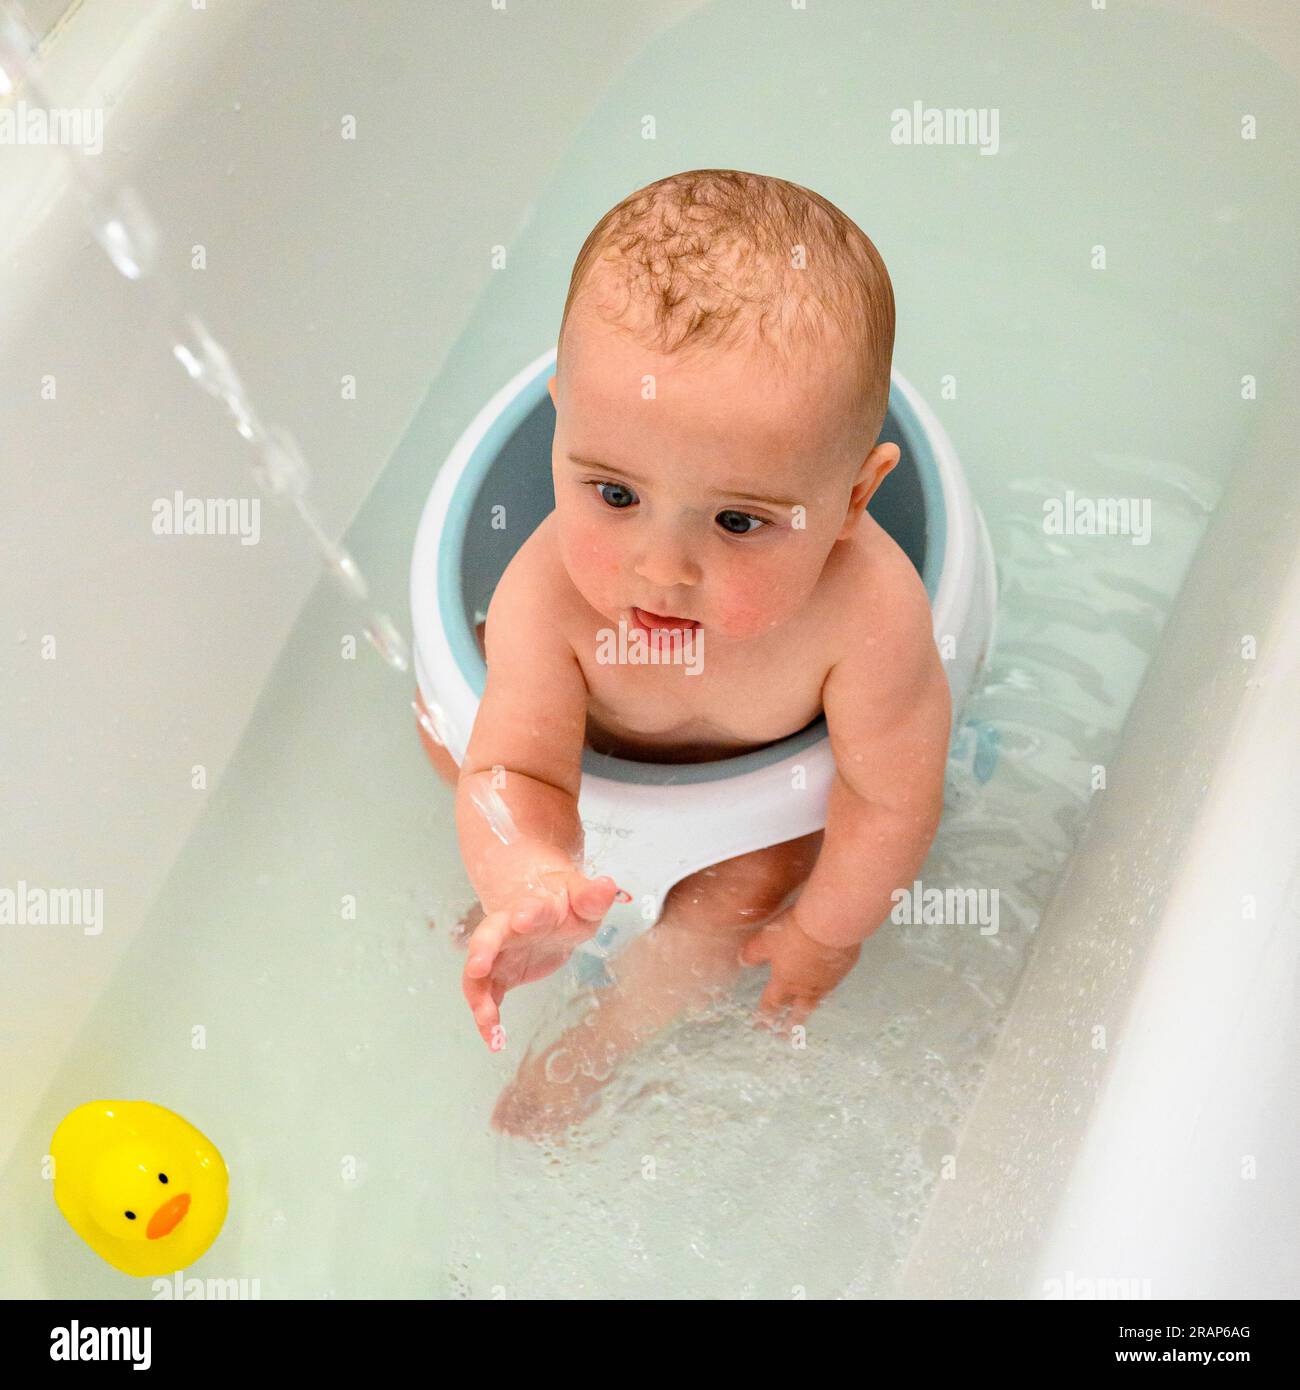 Bébé garçon dans un bain de bébé dans un bain pleine grandeur fasciné par l'eau courante avec canard en plastique jaune Banque D'Images